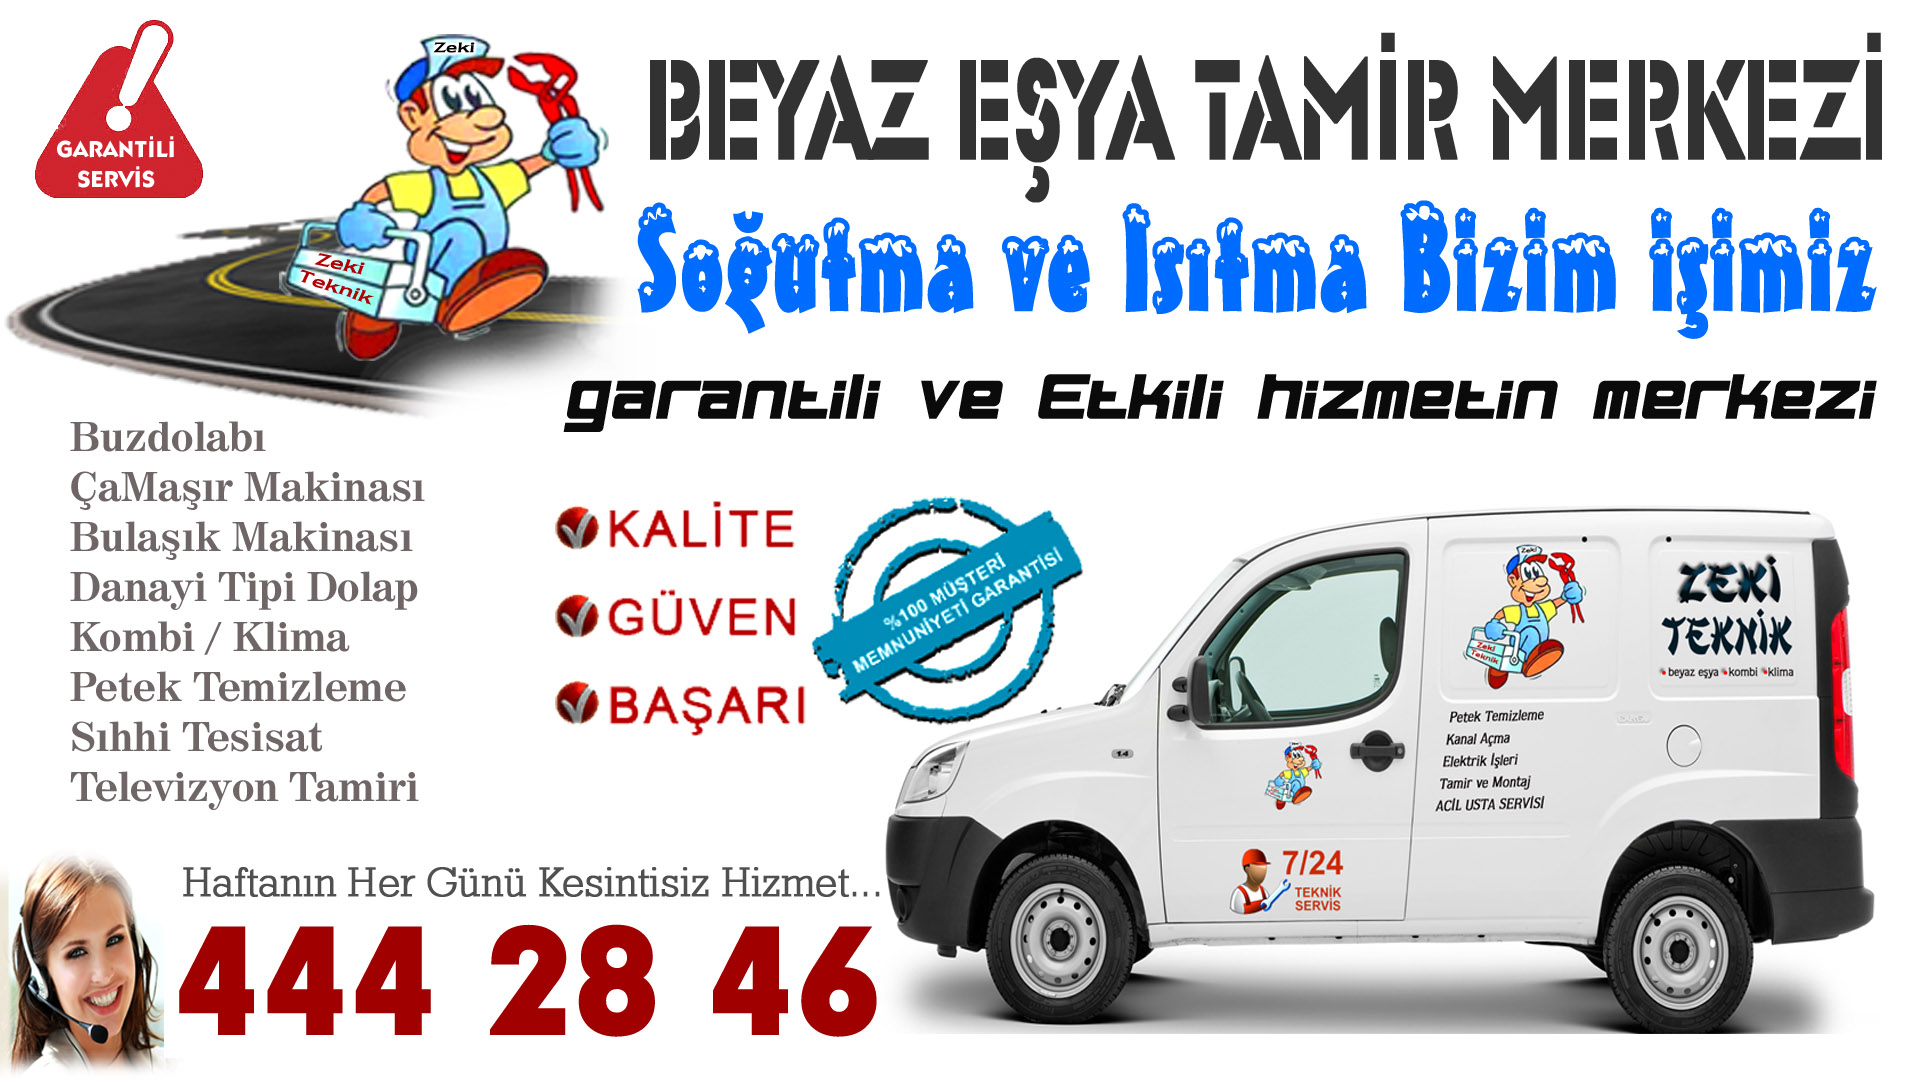 Seyhan Beyaz Eşya Tamircileri/ Servisleri Adana